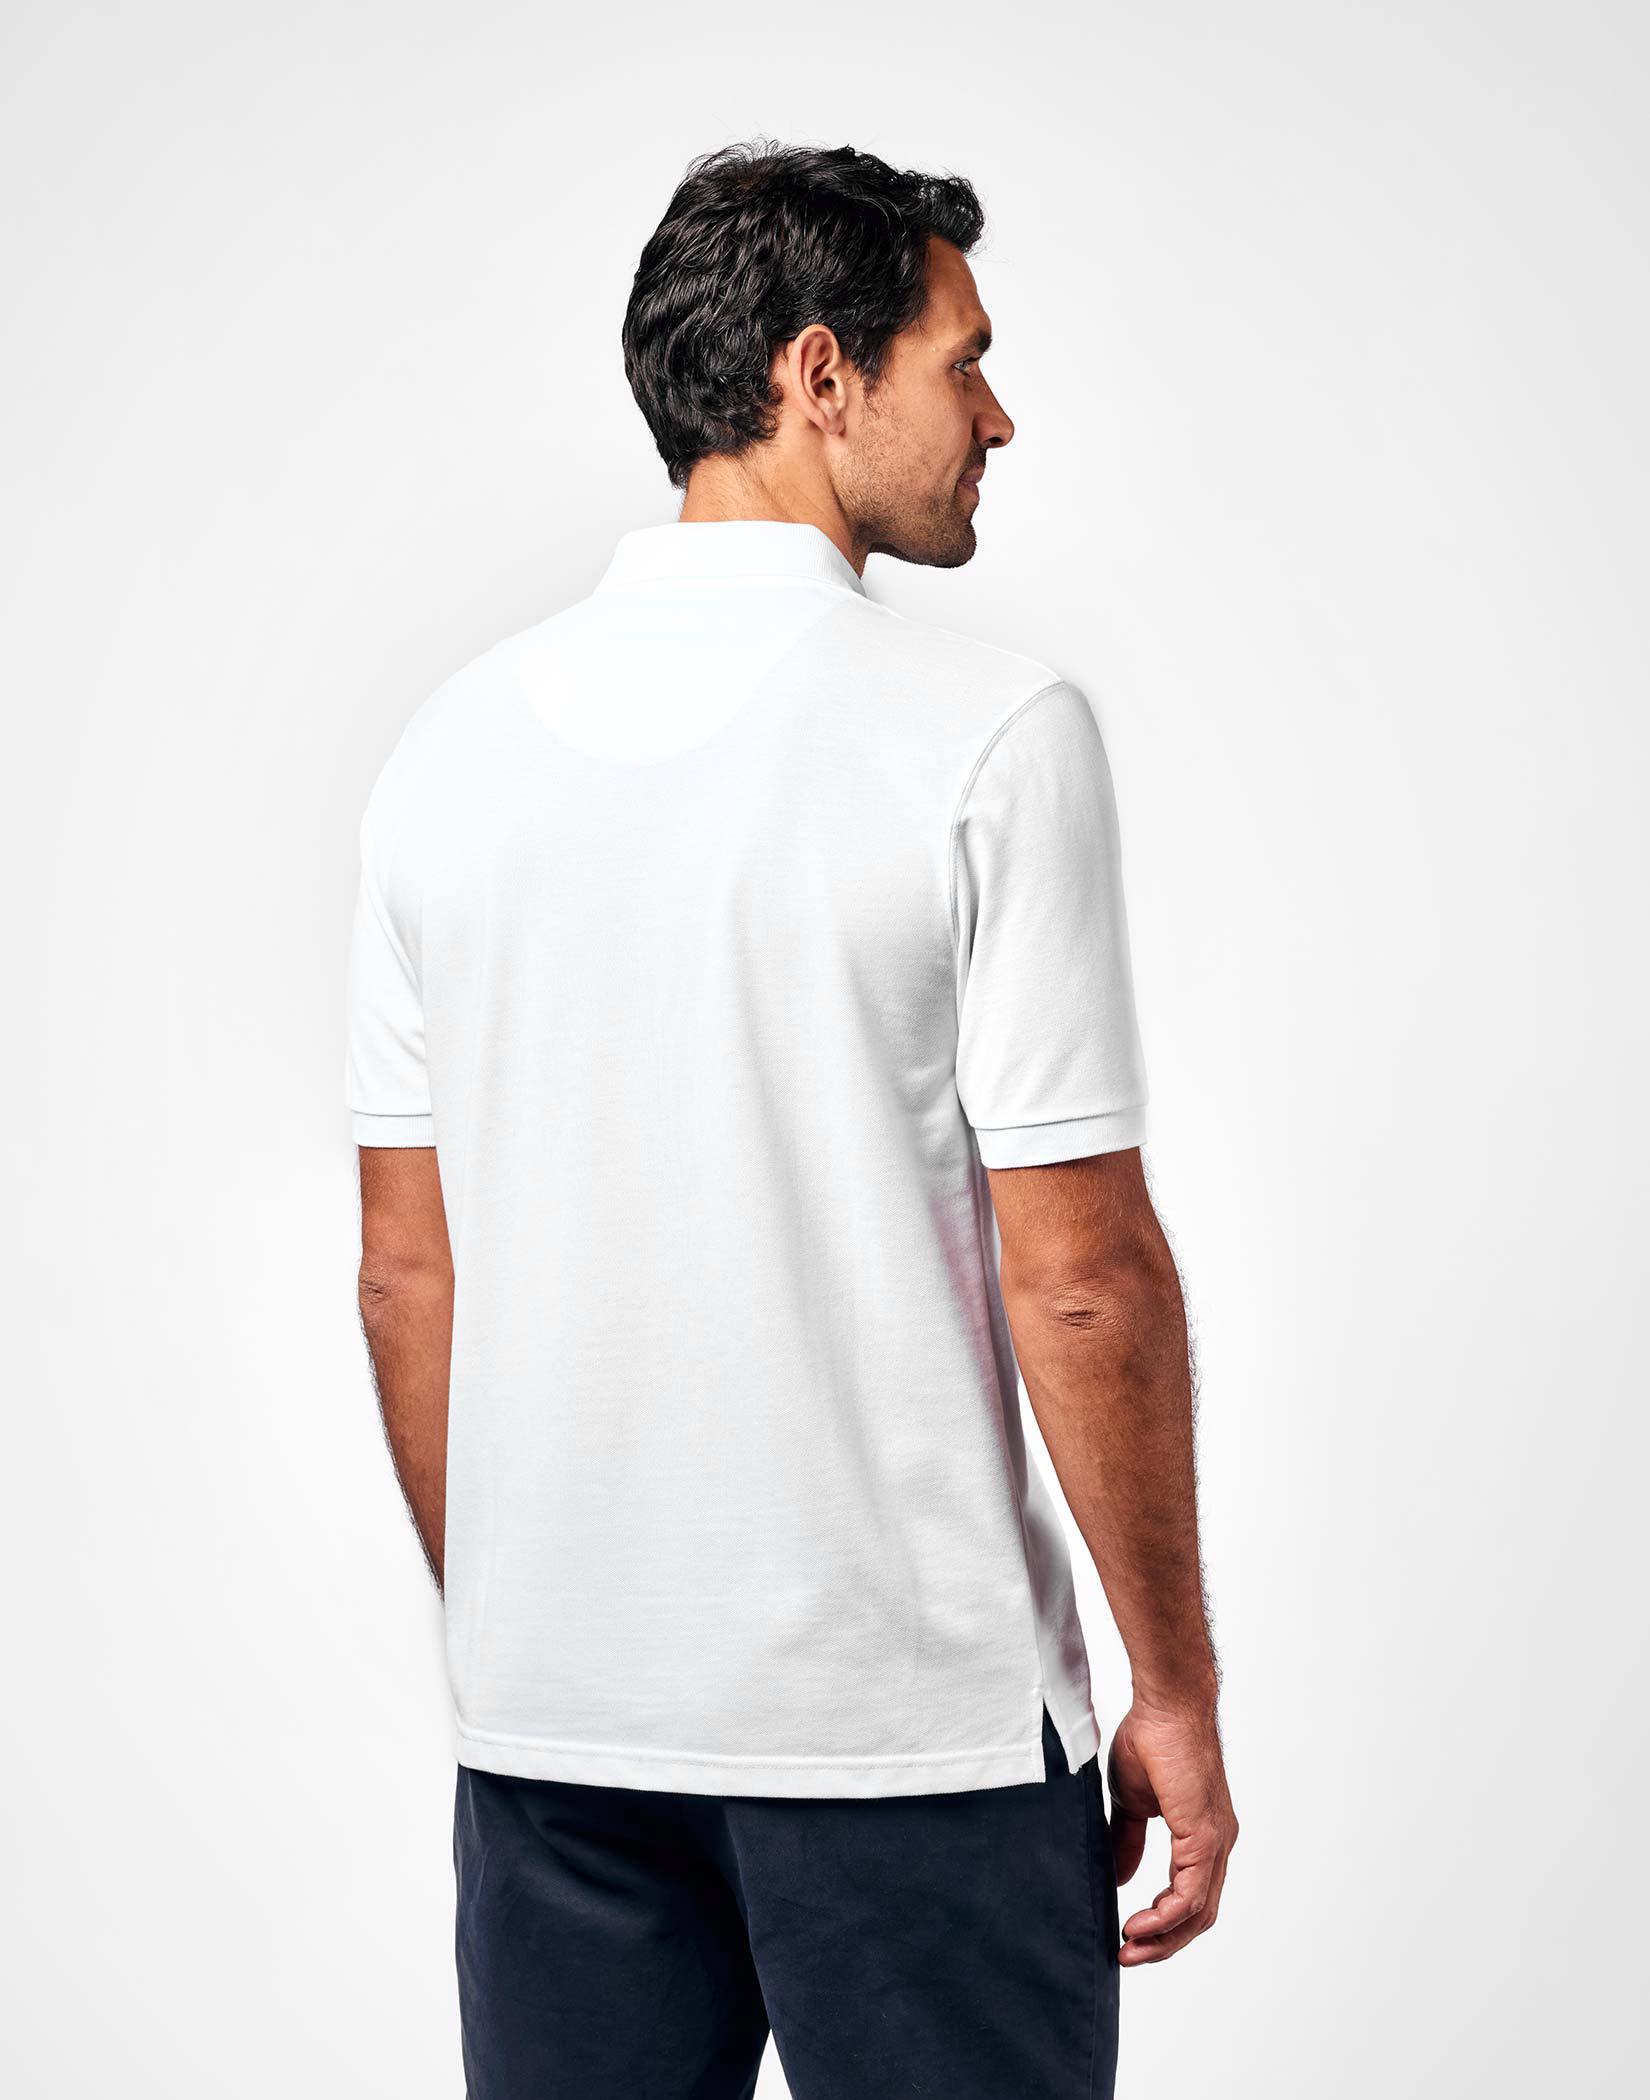 Pique Polo Shirt - White